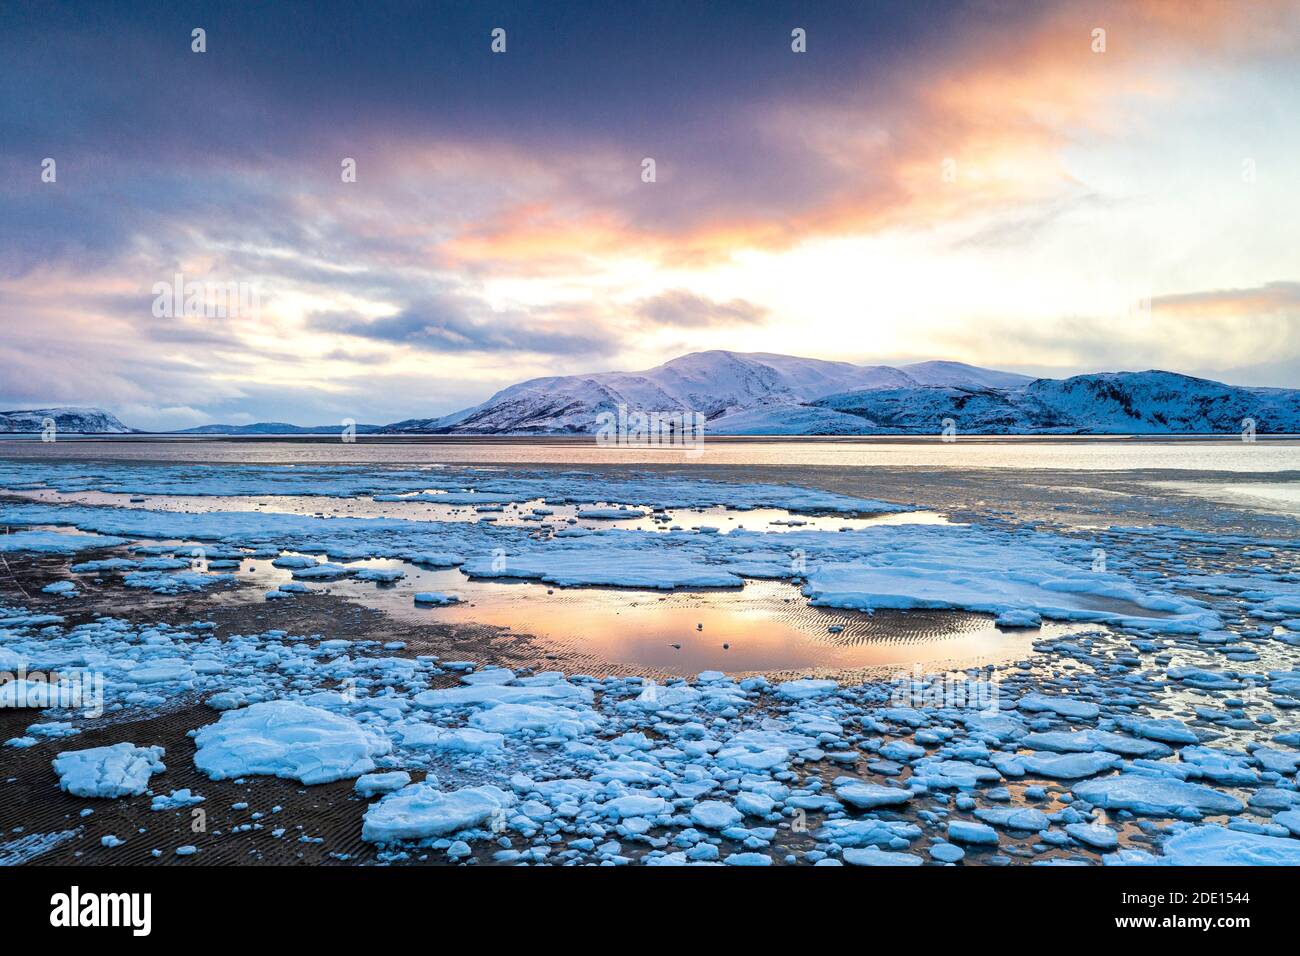 Coucher de soleil arctique sur les montagnes enneigées et la mer gelée, Réserve naturelle de Tanamunningen, Leirpollen, Troms og Finnmark, Arctique, Norvège Banque D'Images